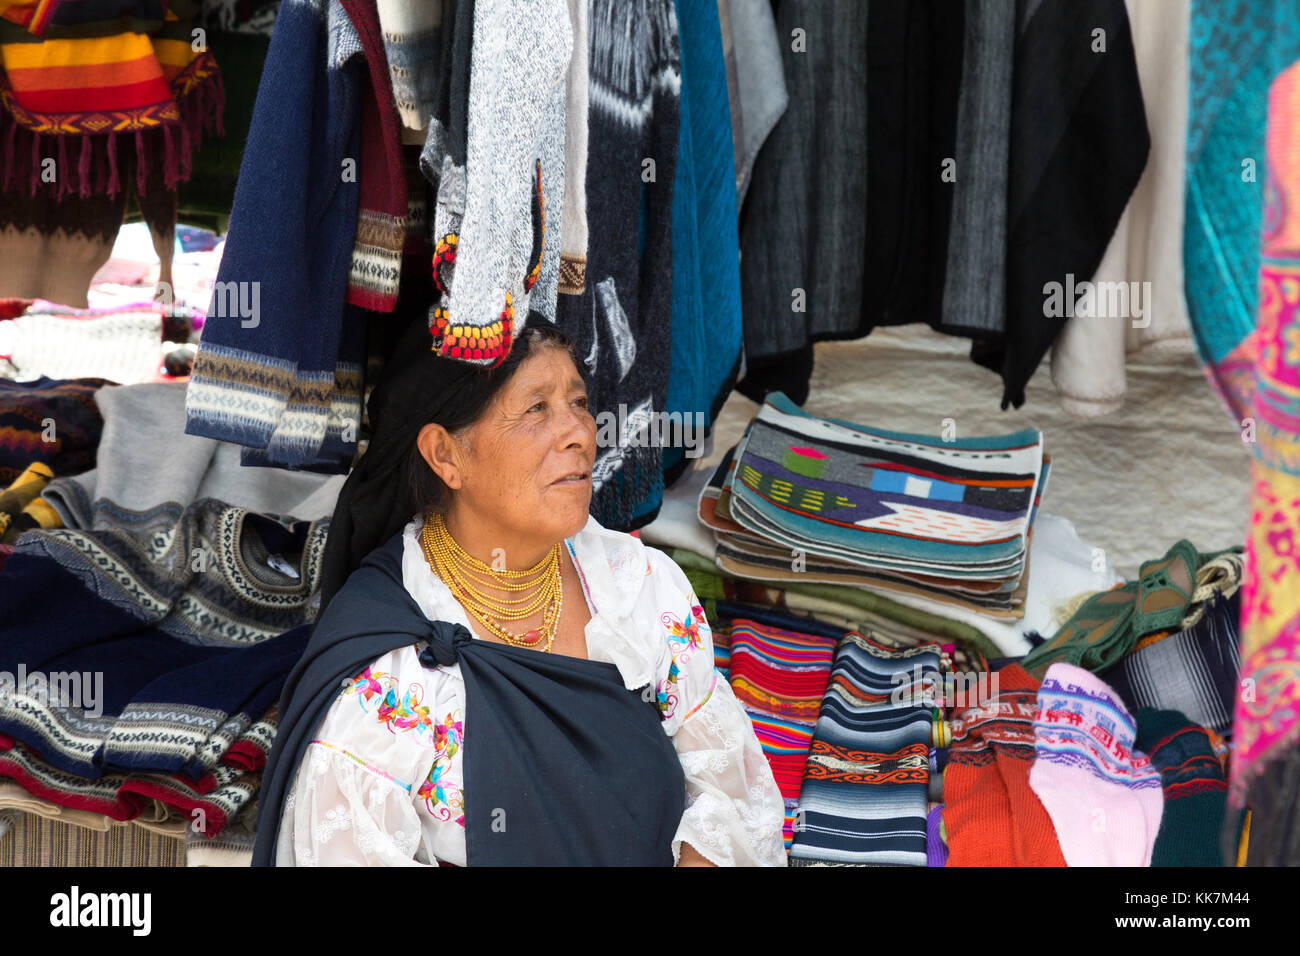 Marché d'Otavalo, Équateur - une femme autochtone titulaire d'une stalle en costume traditionnel, Otavalo, Équateur, Amérique du Sud Banque D'Images